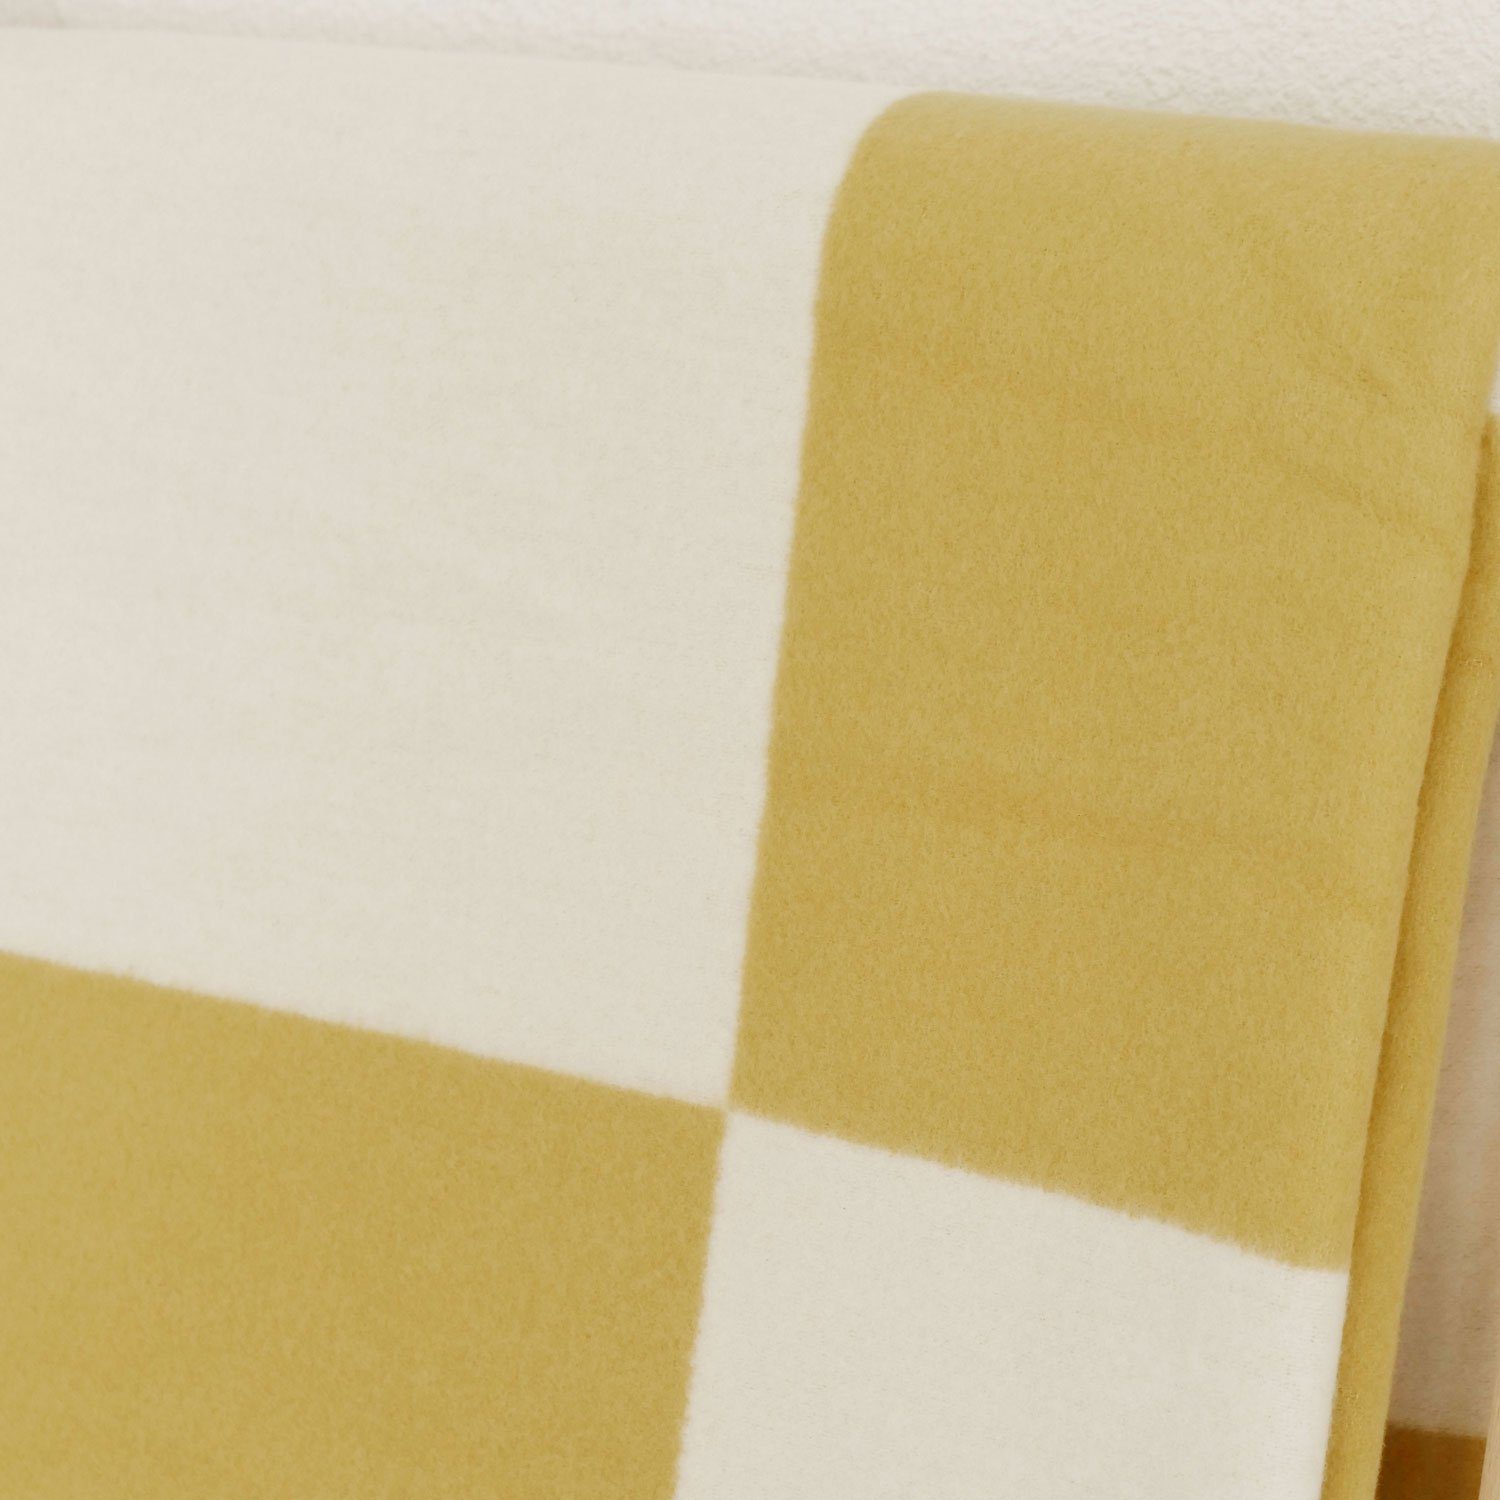 Kuscheldecke weicher Plaid weiche Decke, 150x200cm gelb Made Germany, OEKOTEX 100% Bio-Baumwolle, CLARA Germany, in aus Wohndecke nachhaltig, RIEMA kuscheliges